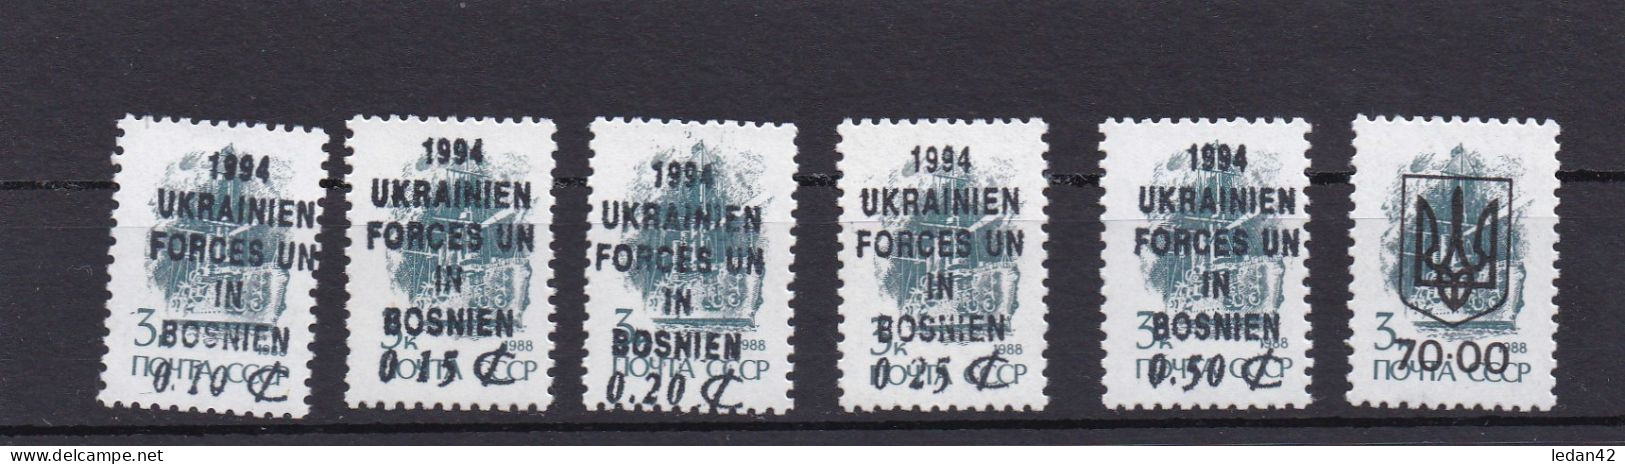 Ukraine 1994, Corps D'interposition U N En Bosnie ** - Oekraïne